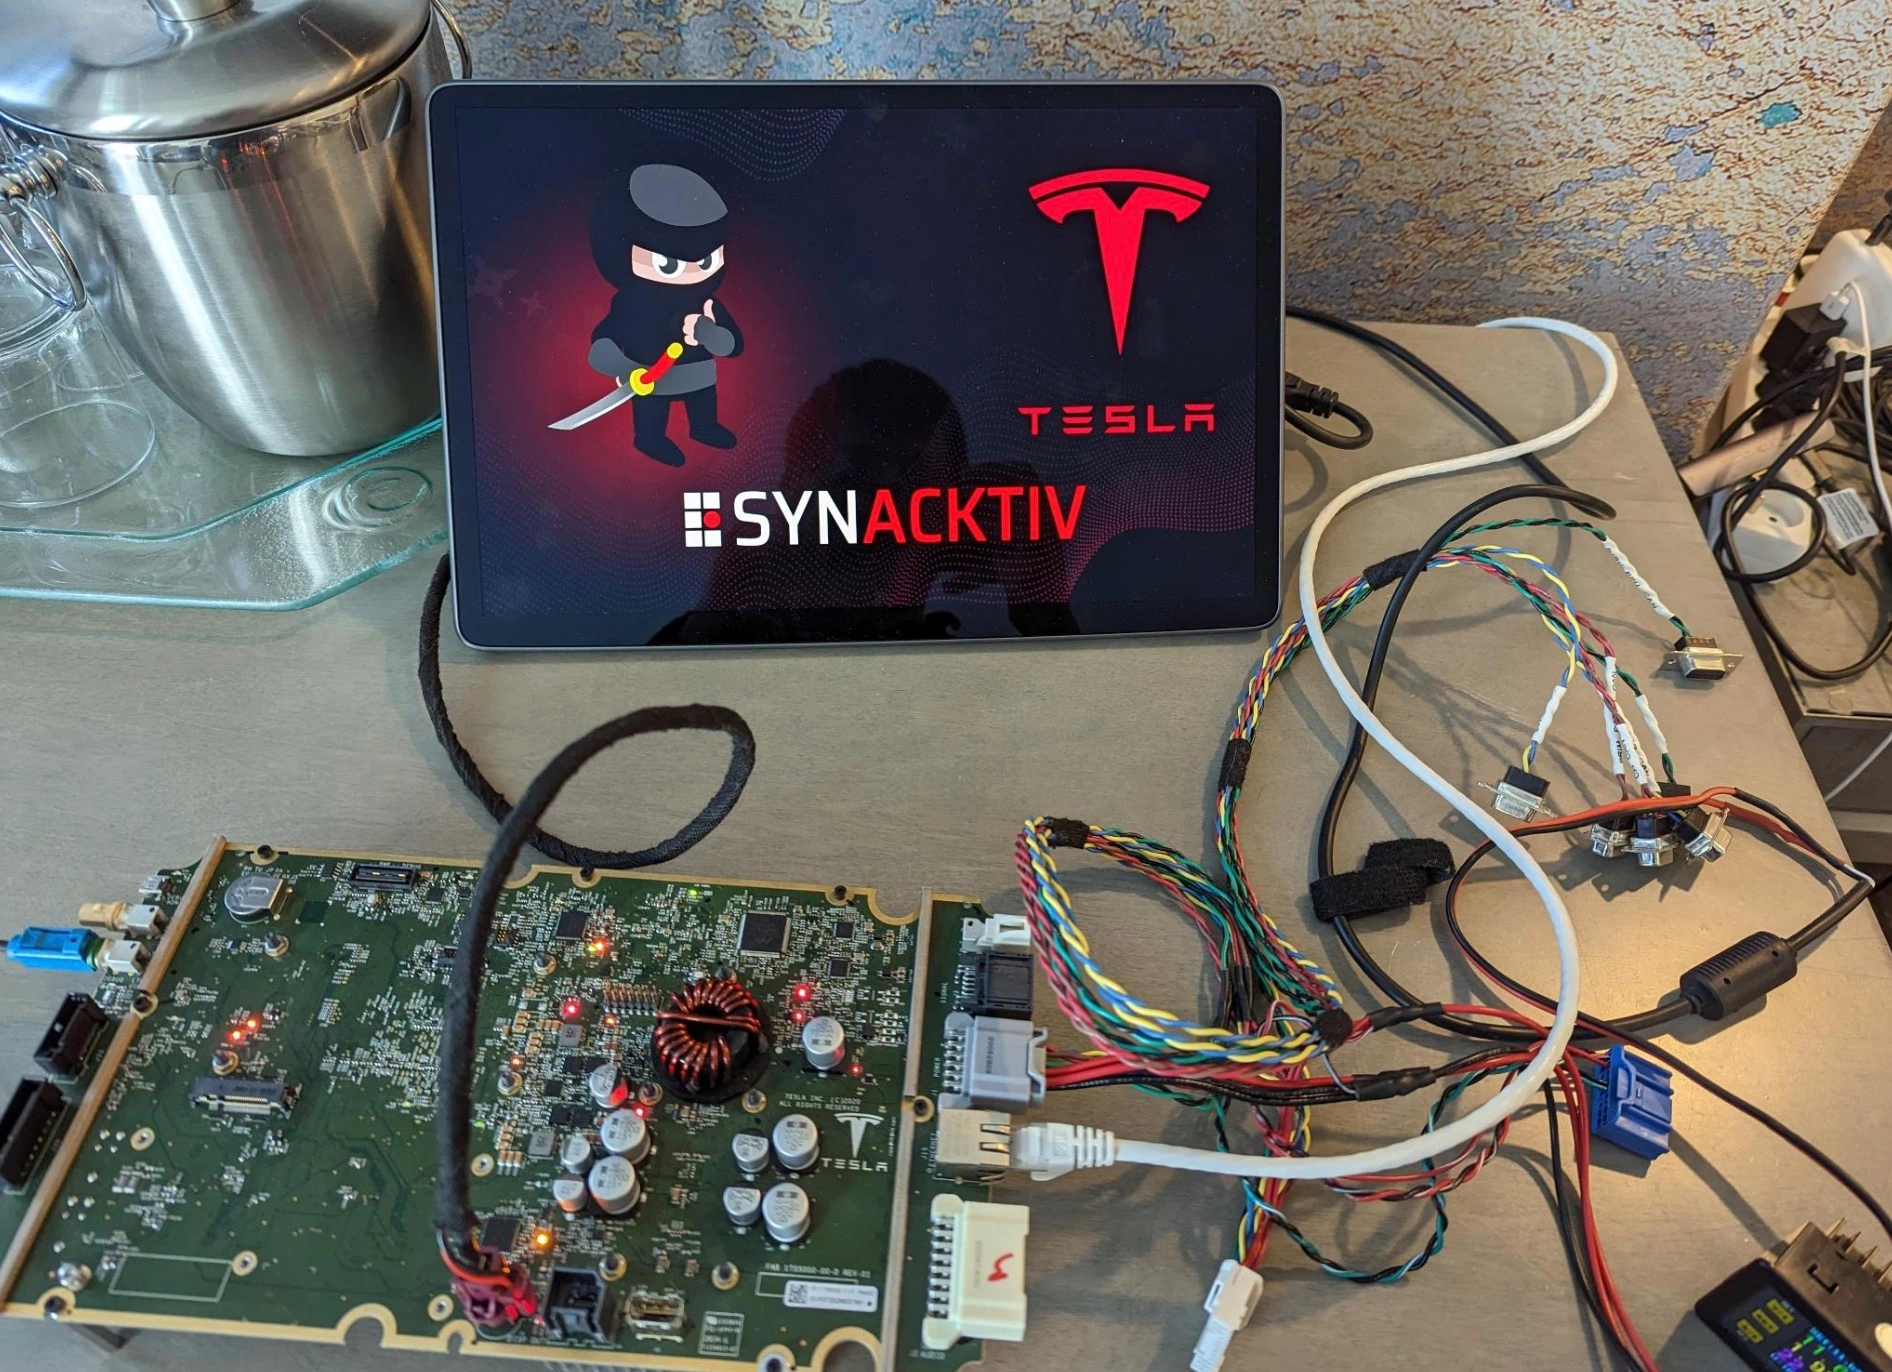 Hakerzy otrzymali 100 tys. dolarów i samochód elektryczny Tesla Model 3 za dwa włamania do zabezpieczeń Tesli